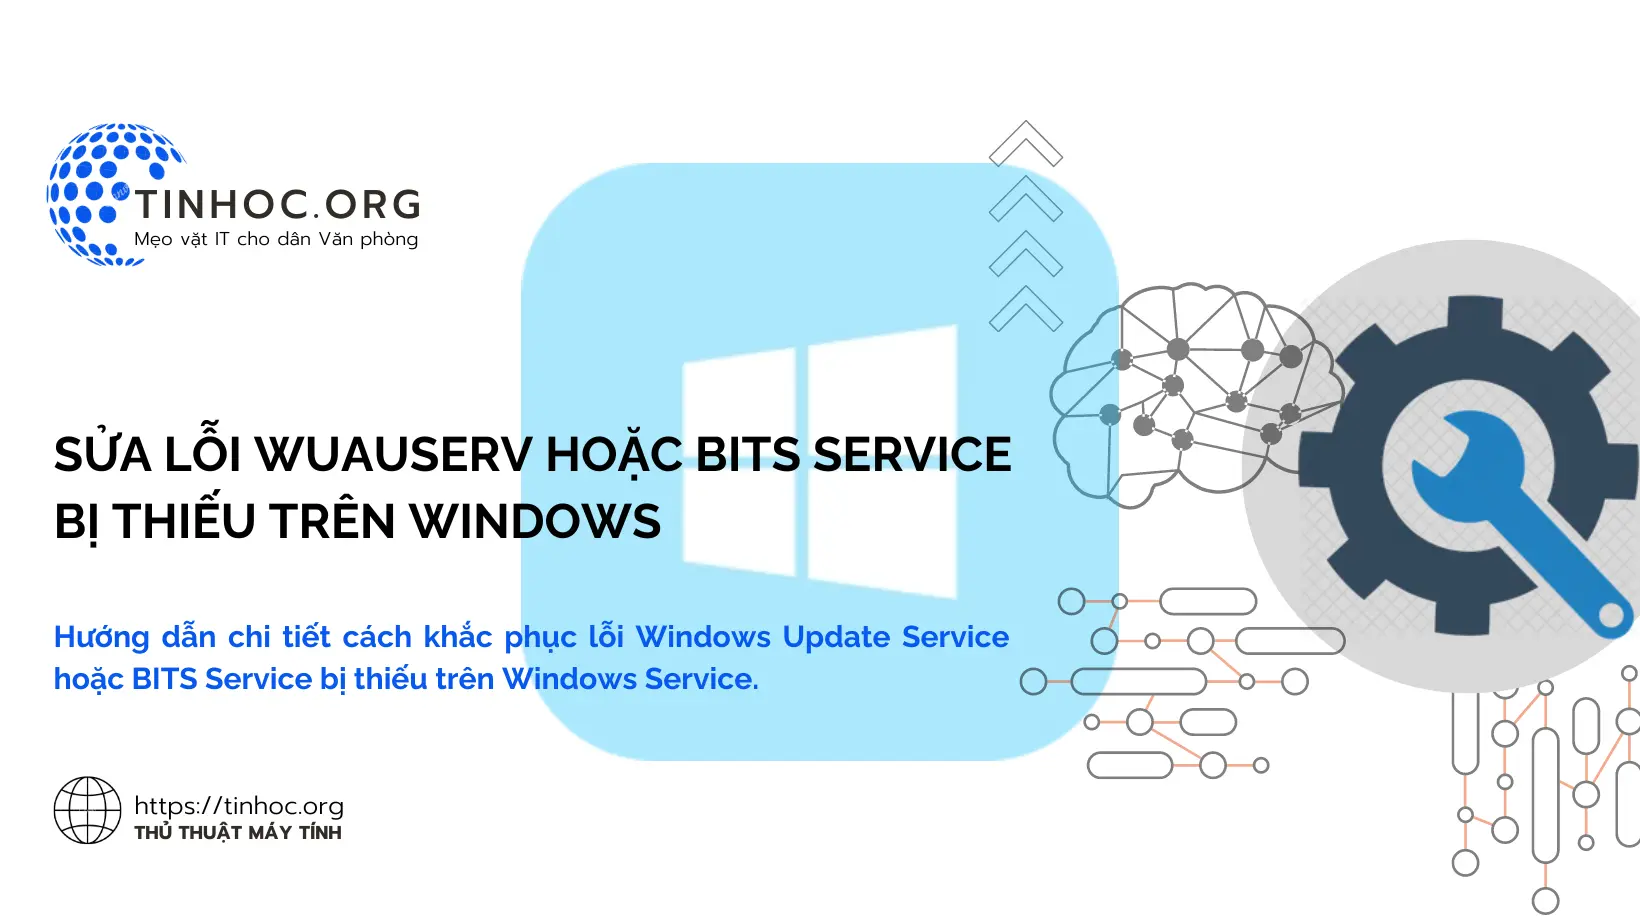 Hướng dẫn chi tiết cách khắc phục lỗi Windows Update Service hoặc BITS Service bị thiếu trên Windows Service.